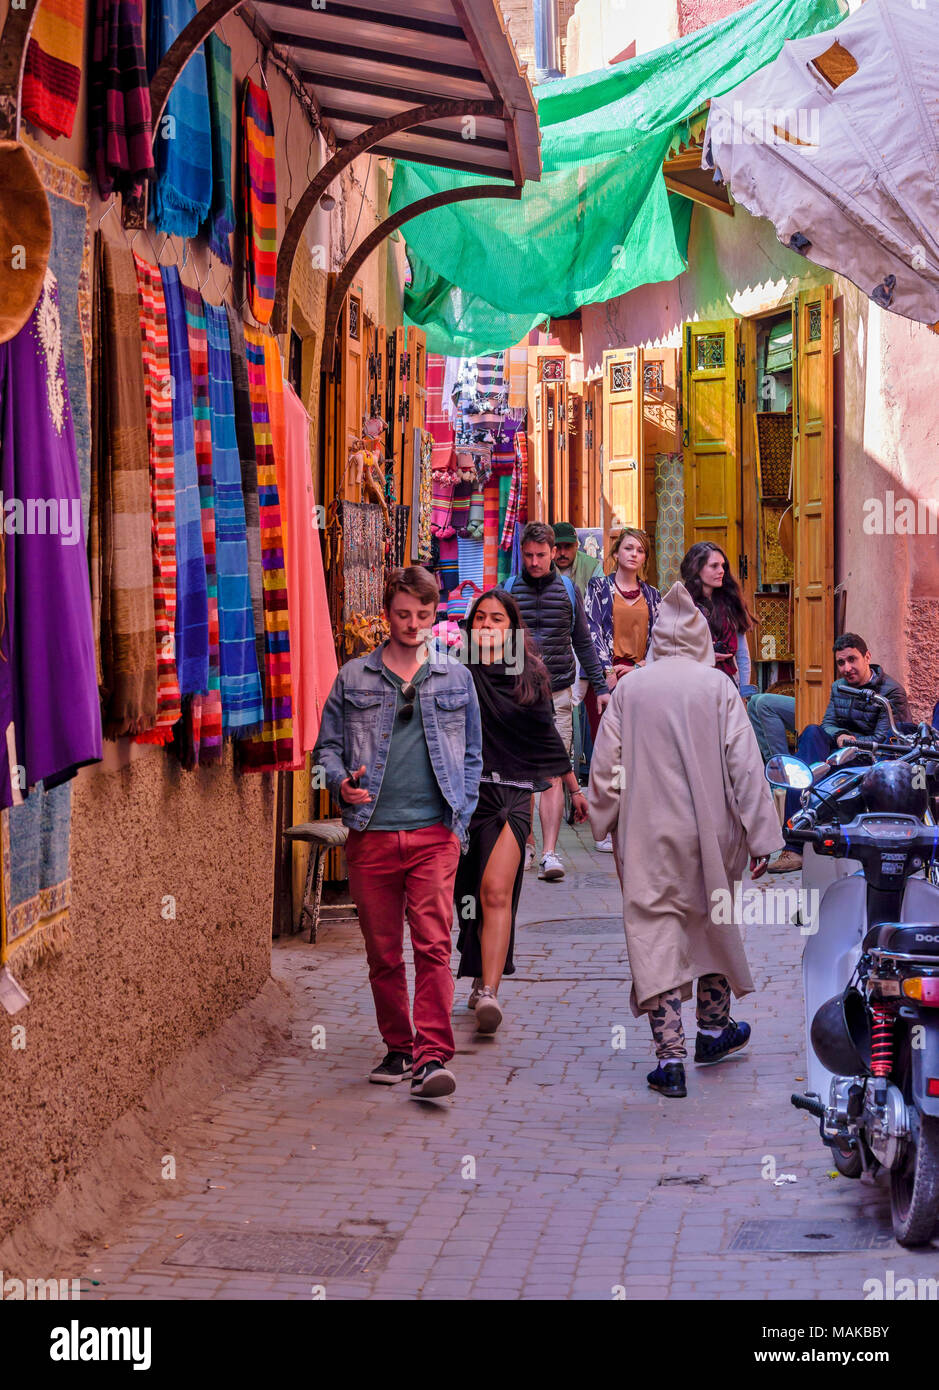 Il Marocco Marrakech Jemaa el Fna MEDINA SOUK foulard colorati e stretti  vicoli del Mercato Foto stock - Alamy